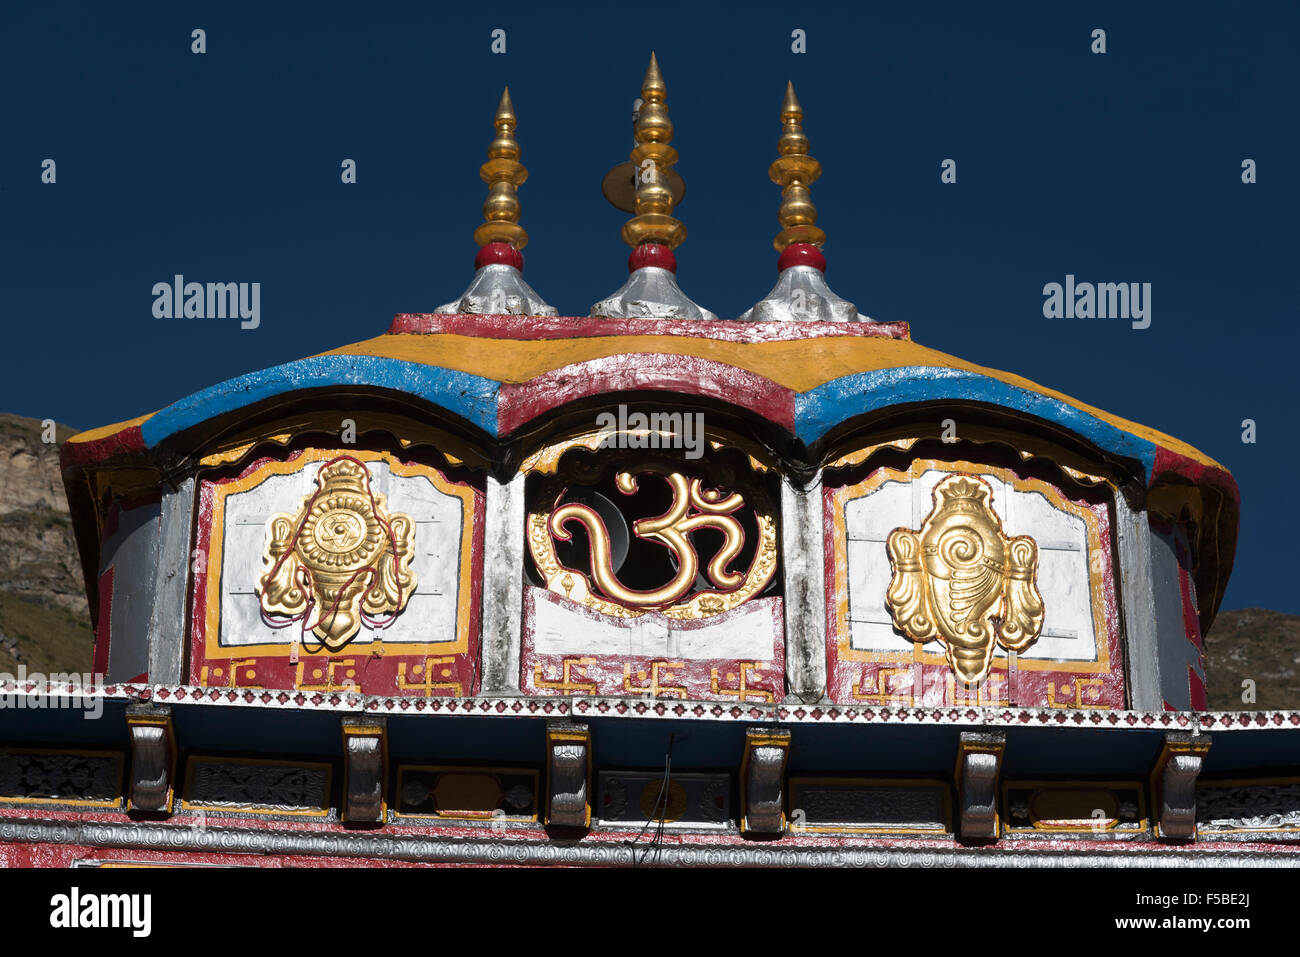 Temple Badrinath top Chef Détails, Garhwal Himalaya, Inde. Le temple de Badrinath, l'un des endroits de pèlerinage les plus sacrés de l'Hindouisme Banque D'Images